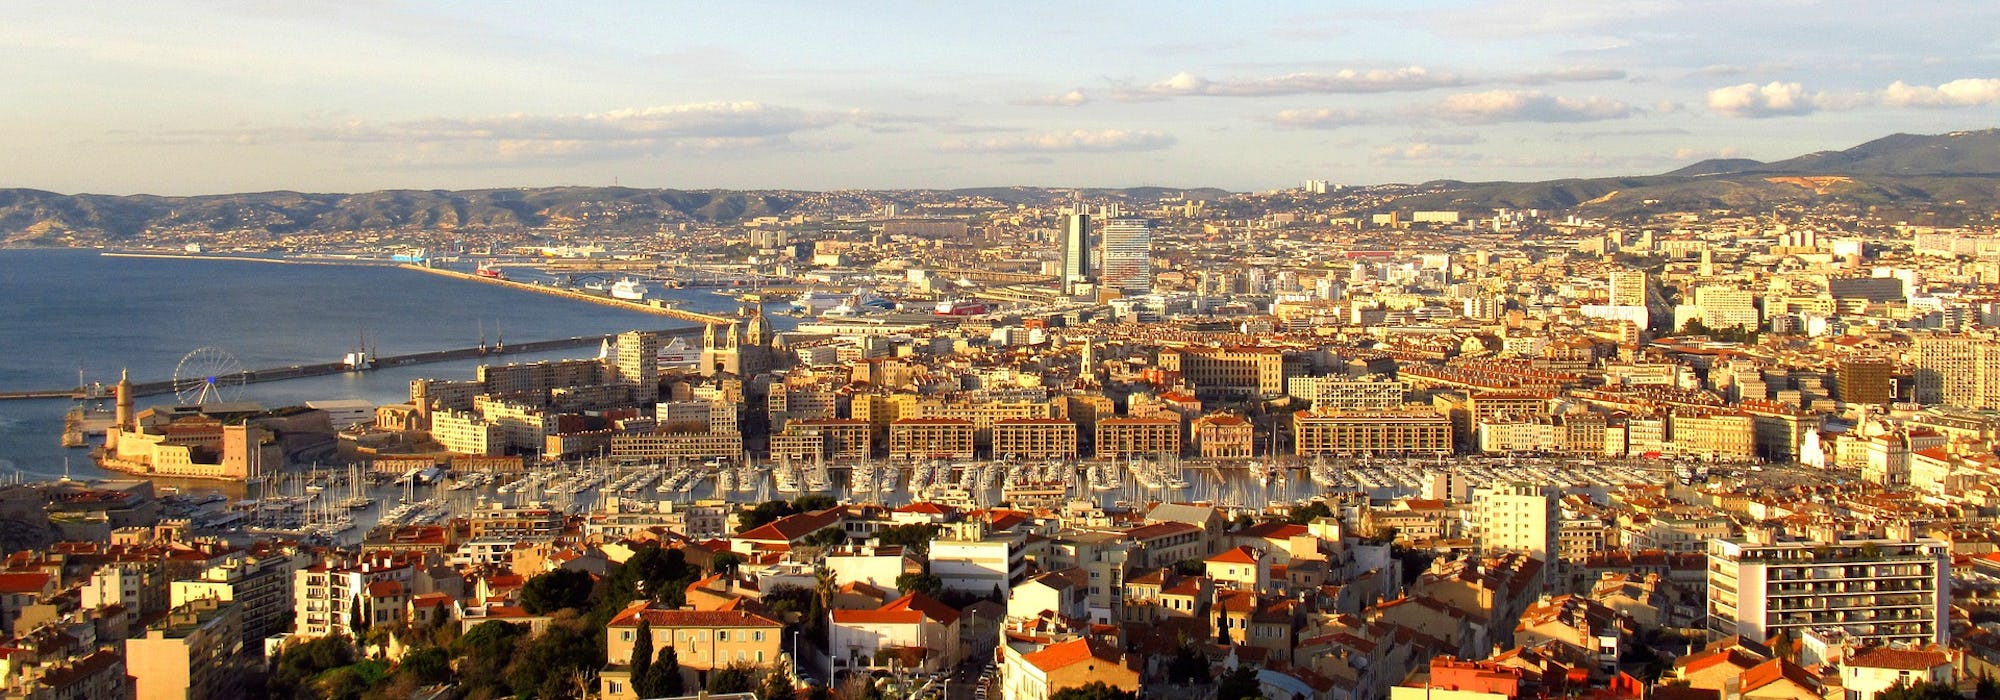 Överblicksbild på Marseille's stadskärna och hamn.